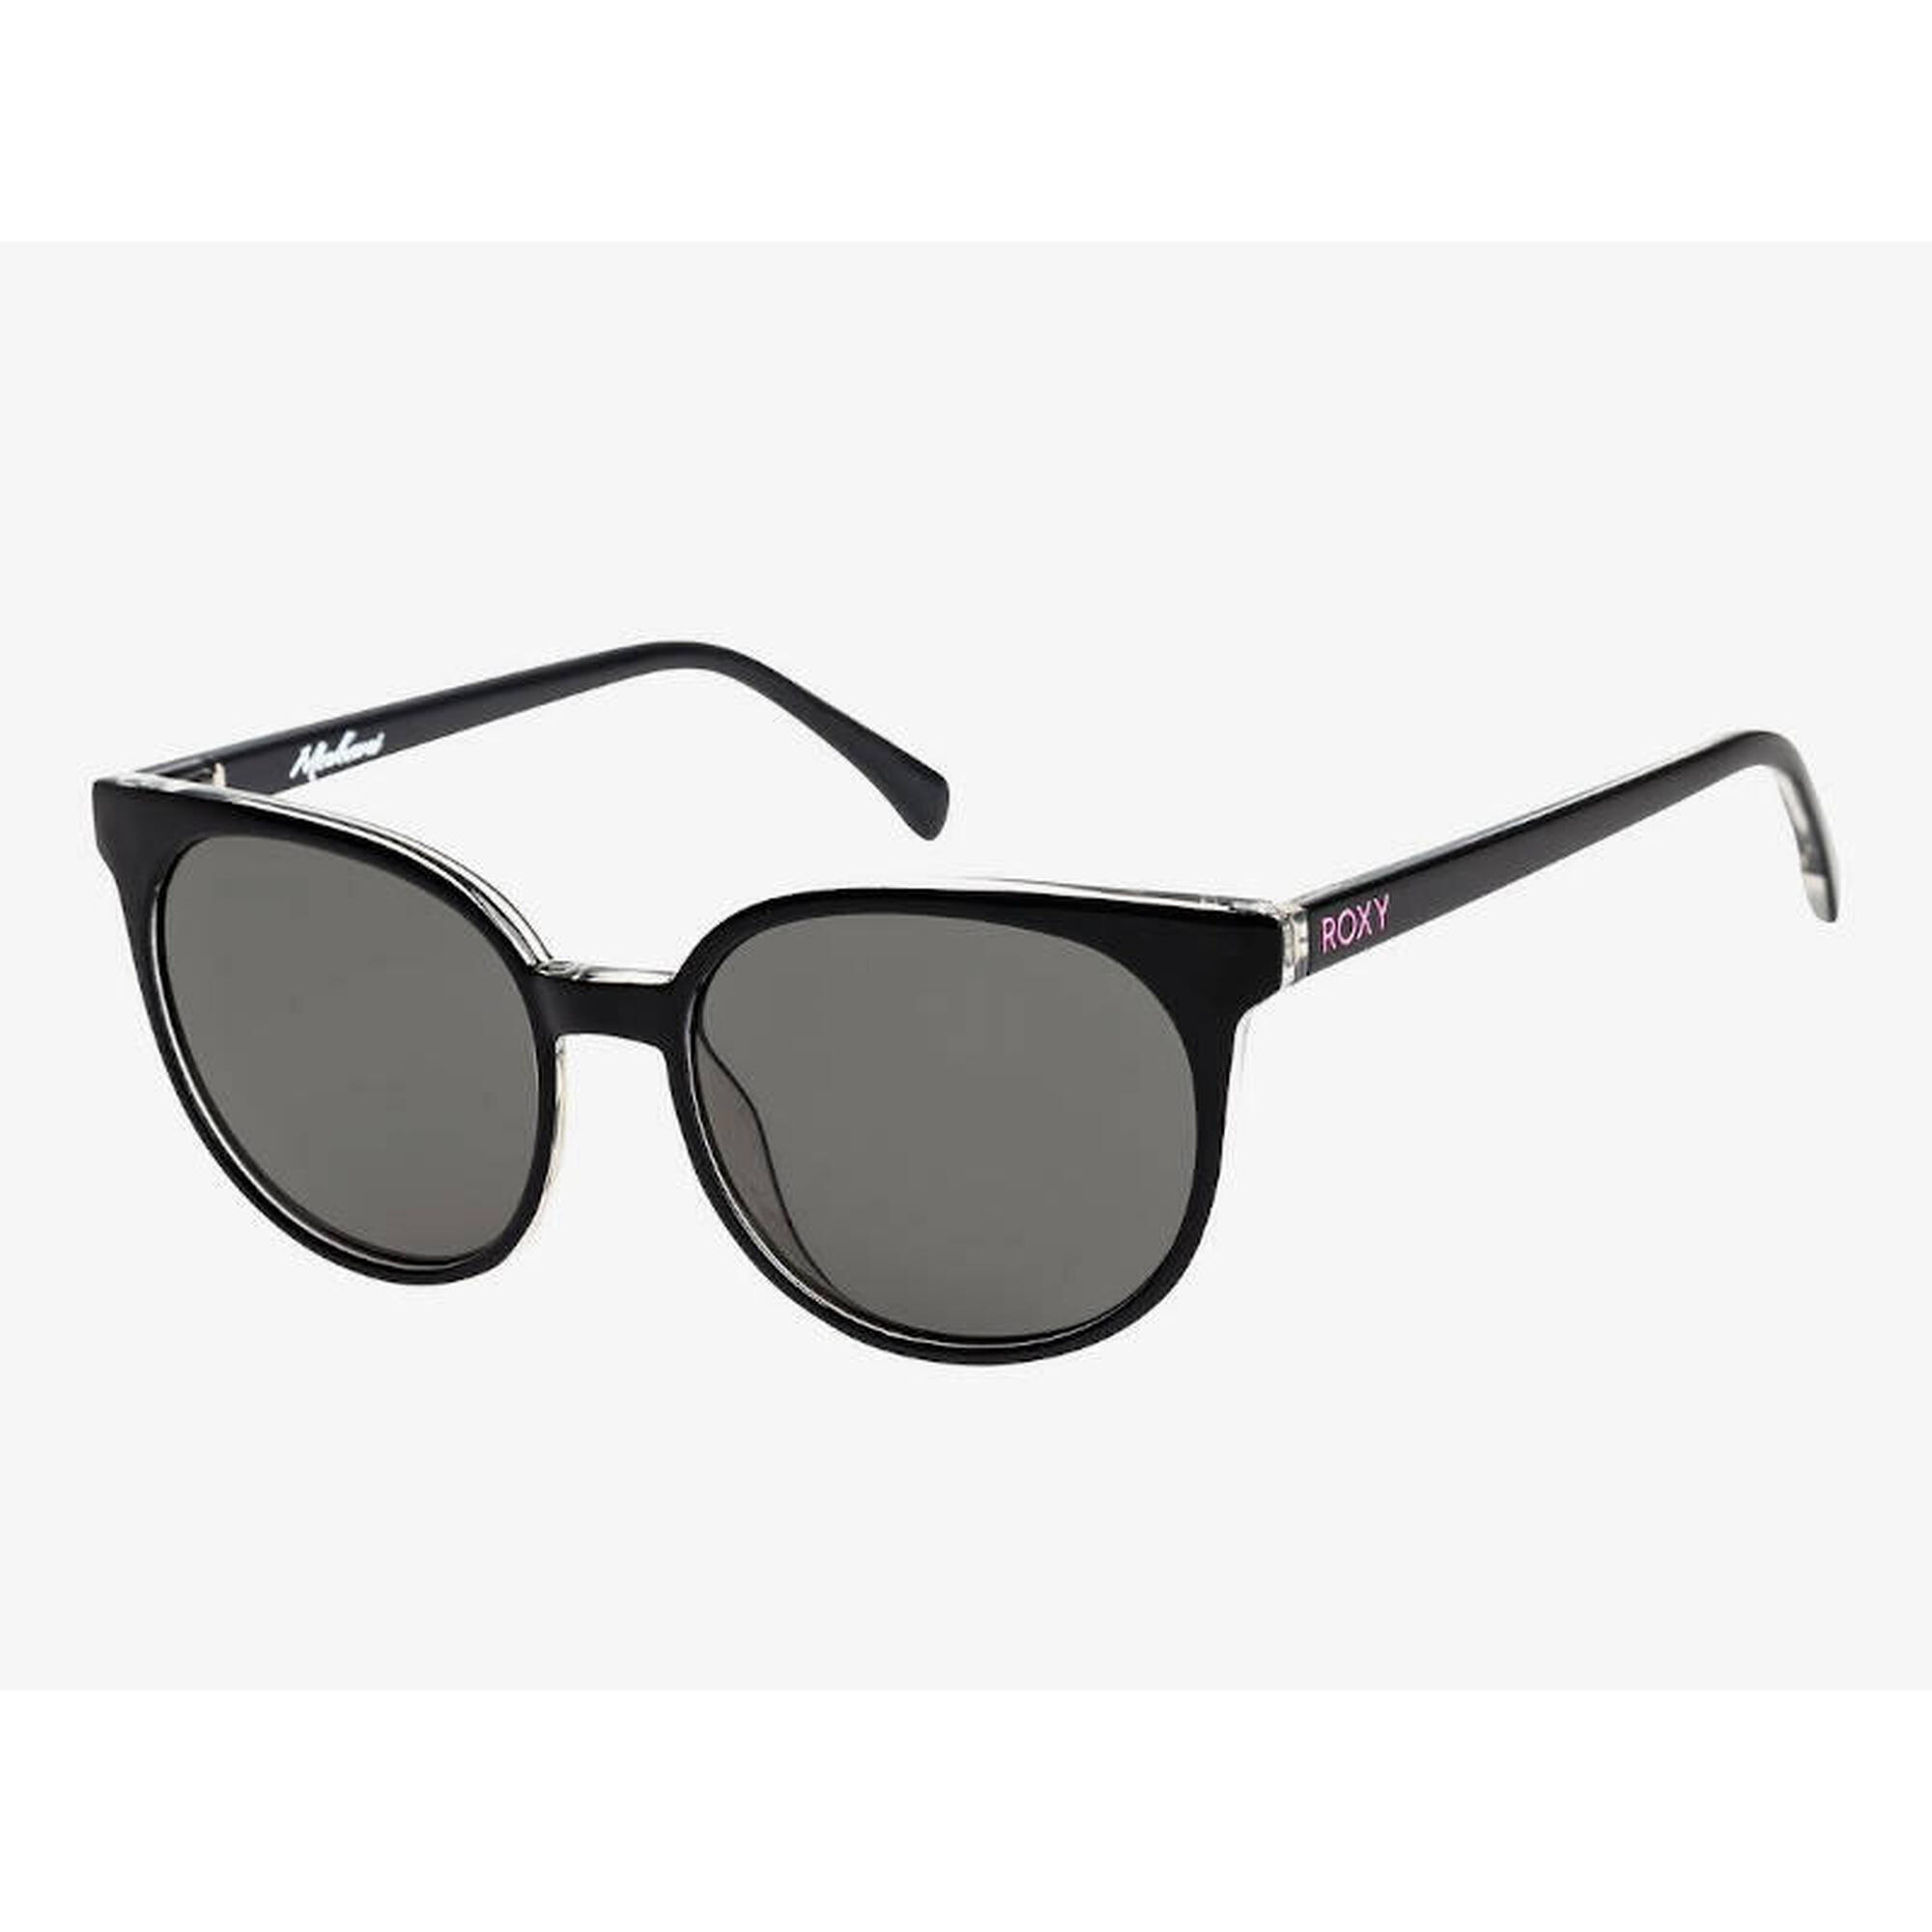 Okulary Roxy przeciwsłoneczne Makani G XKKS Shiny Black Grey